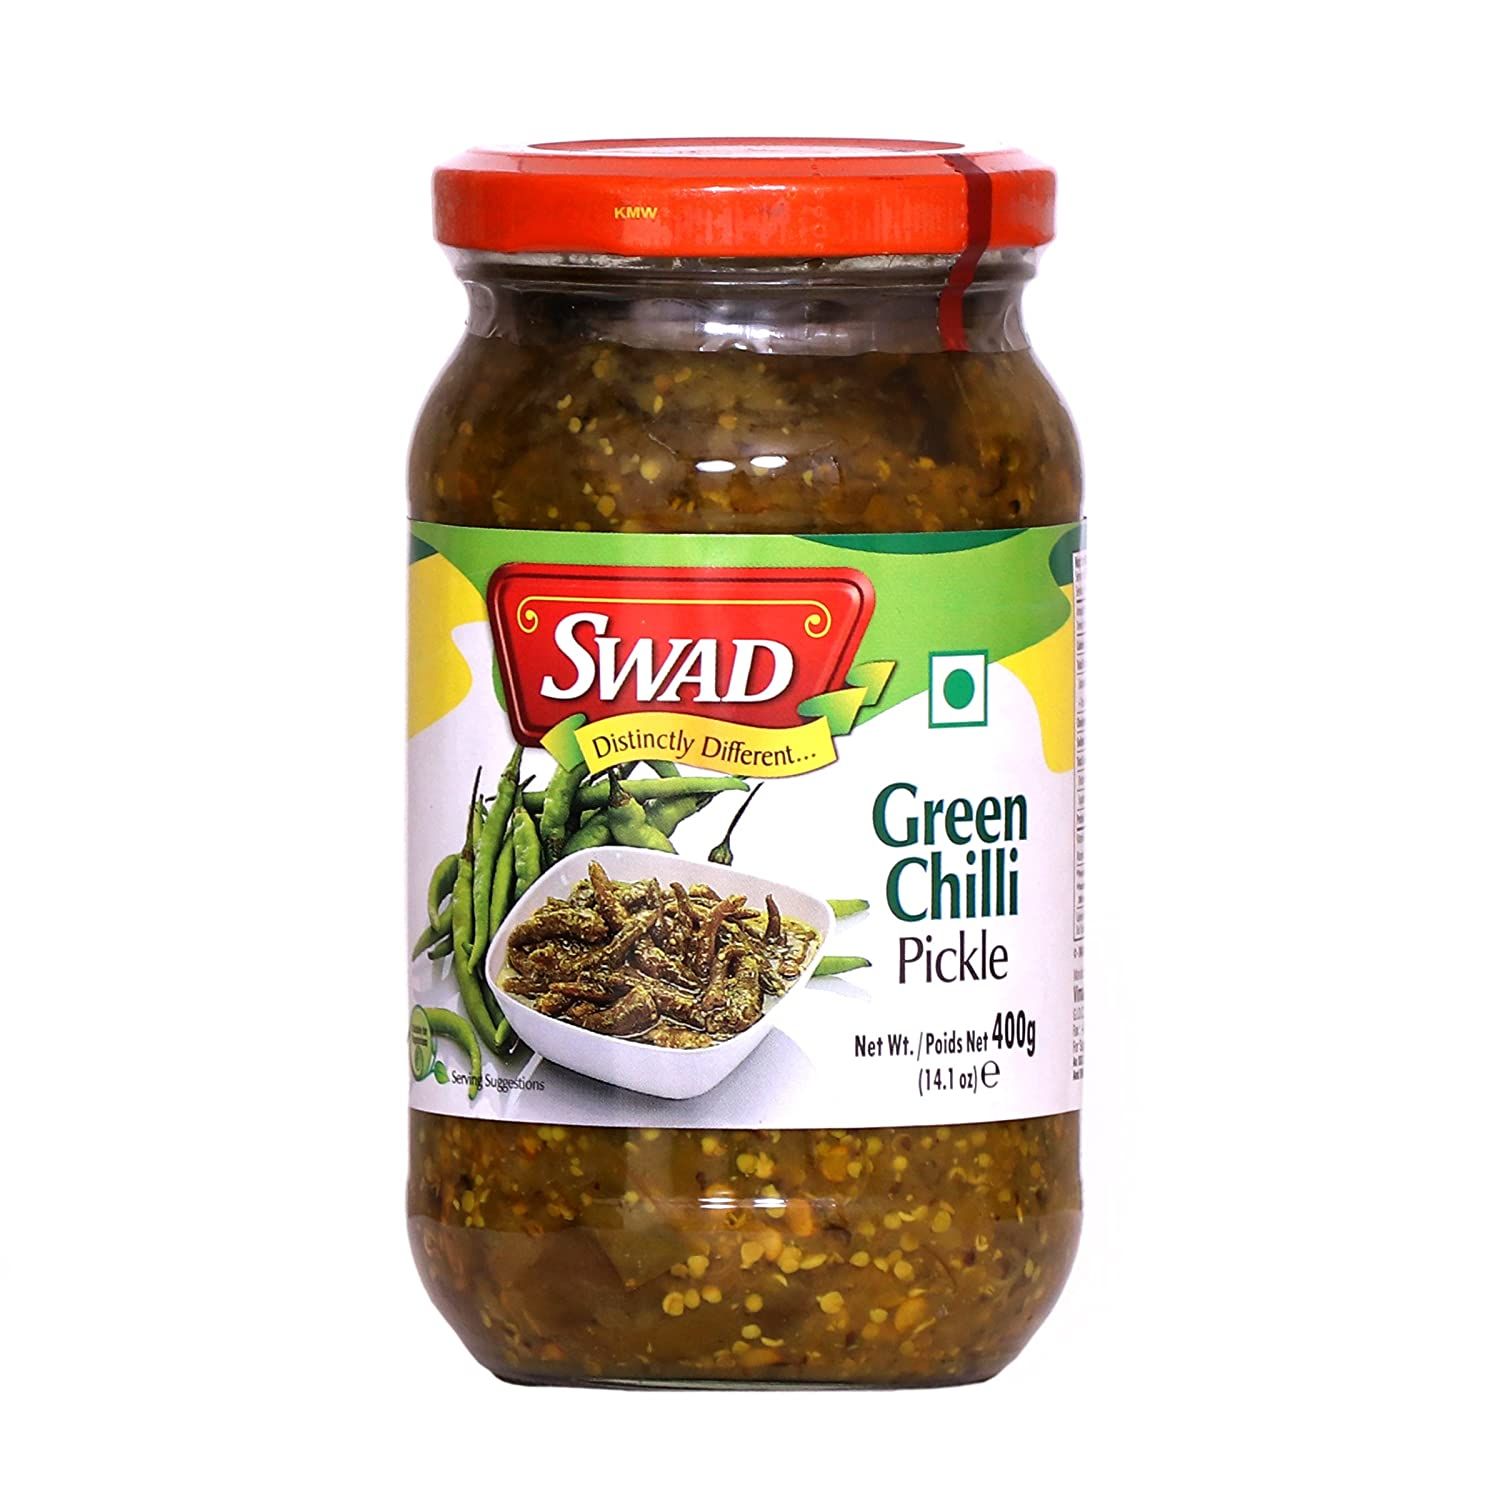 SWAD Delicious Green Chilli Pickle Image